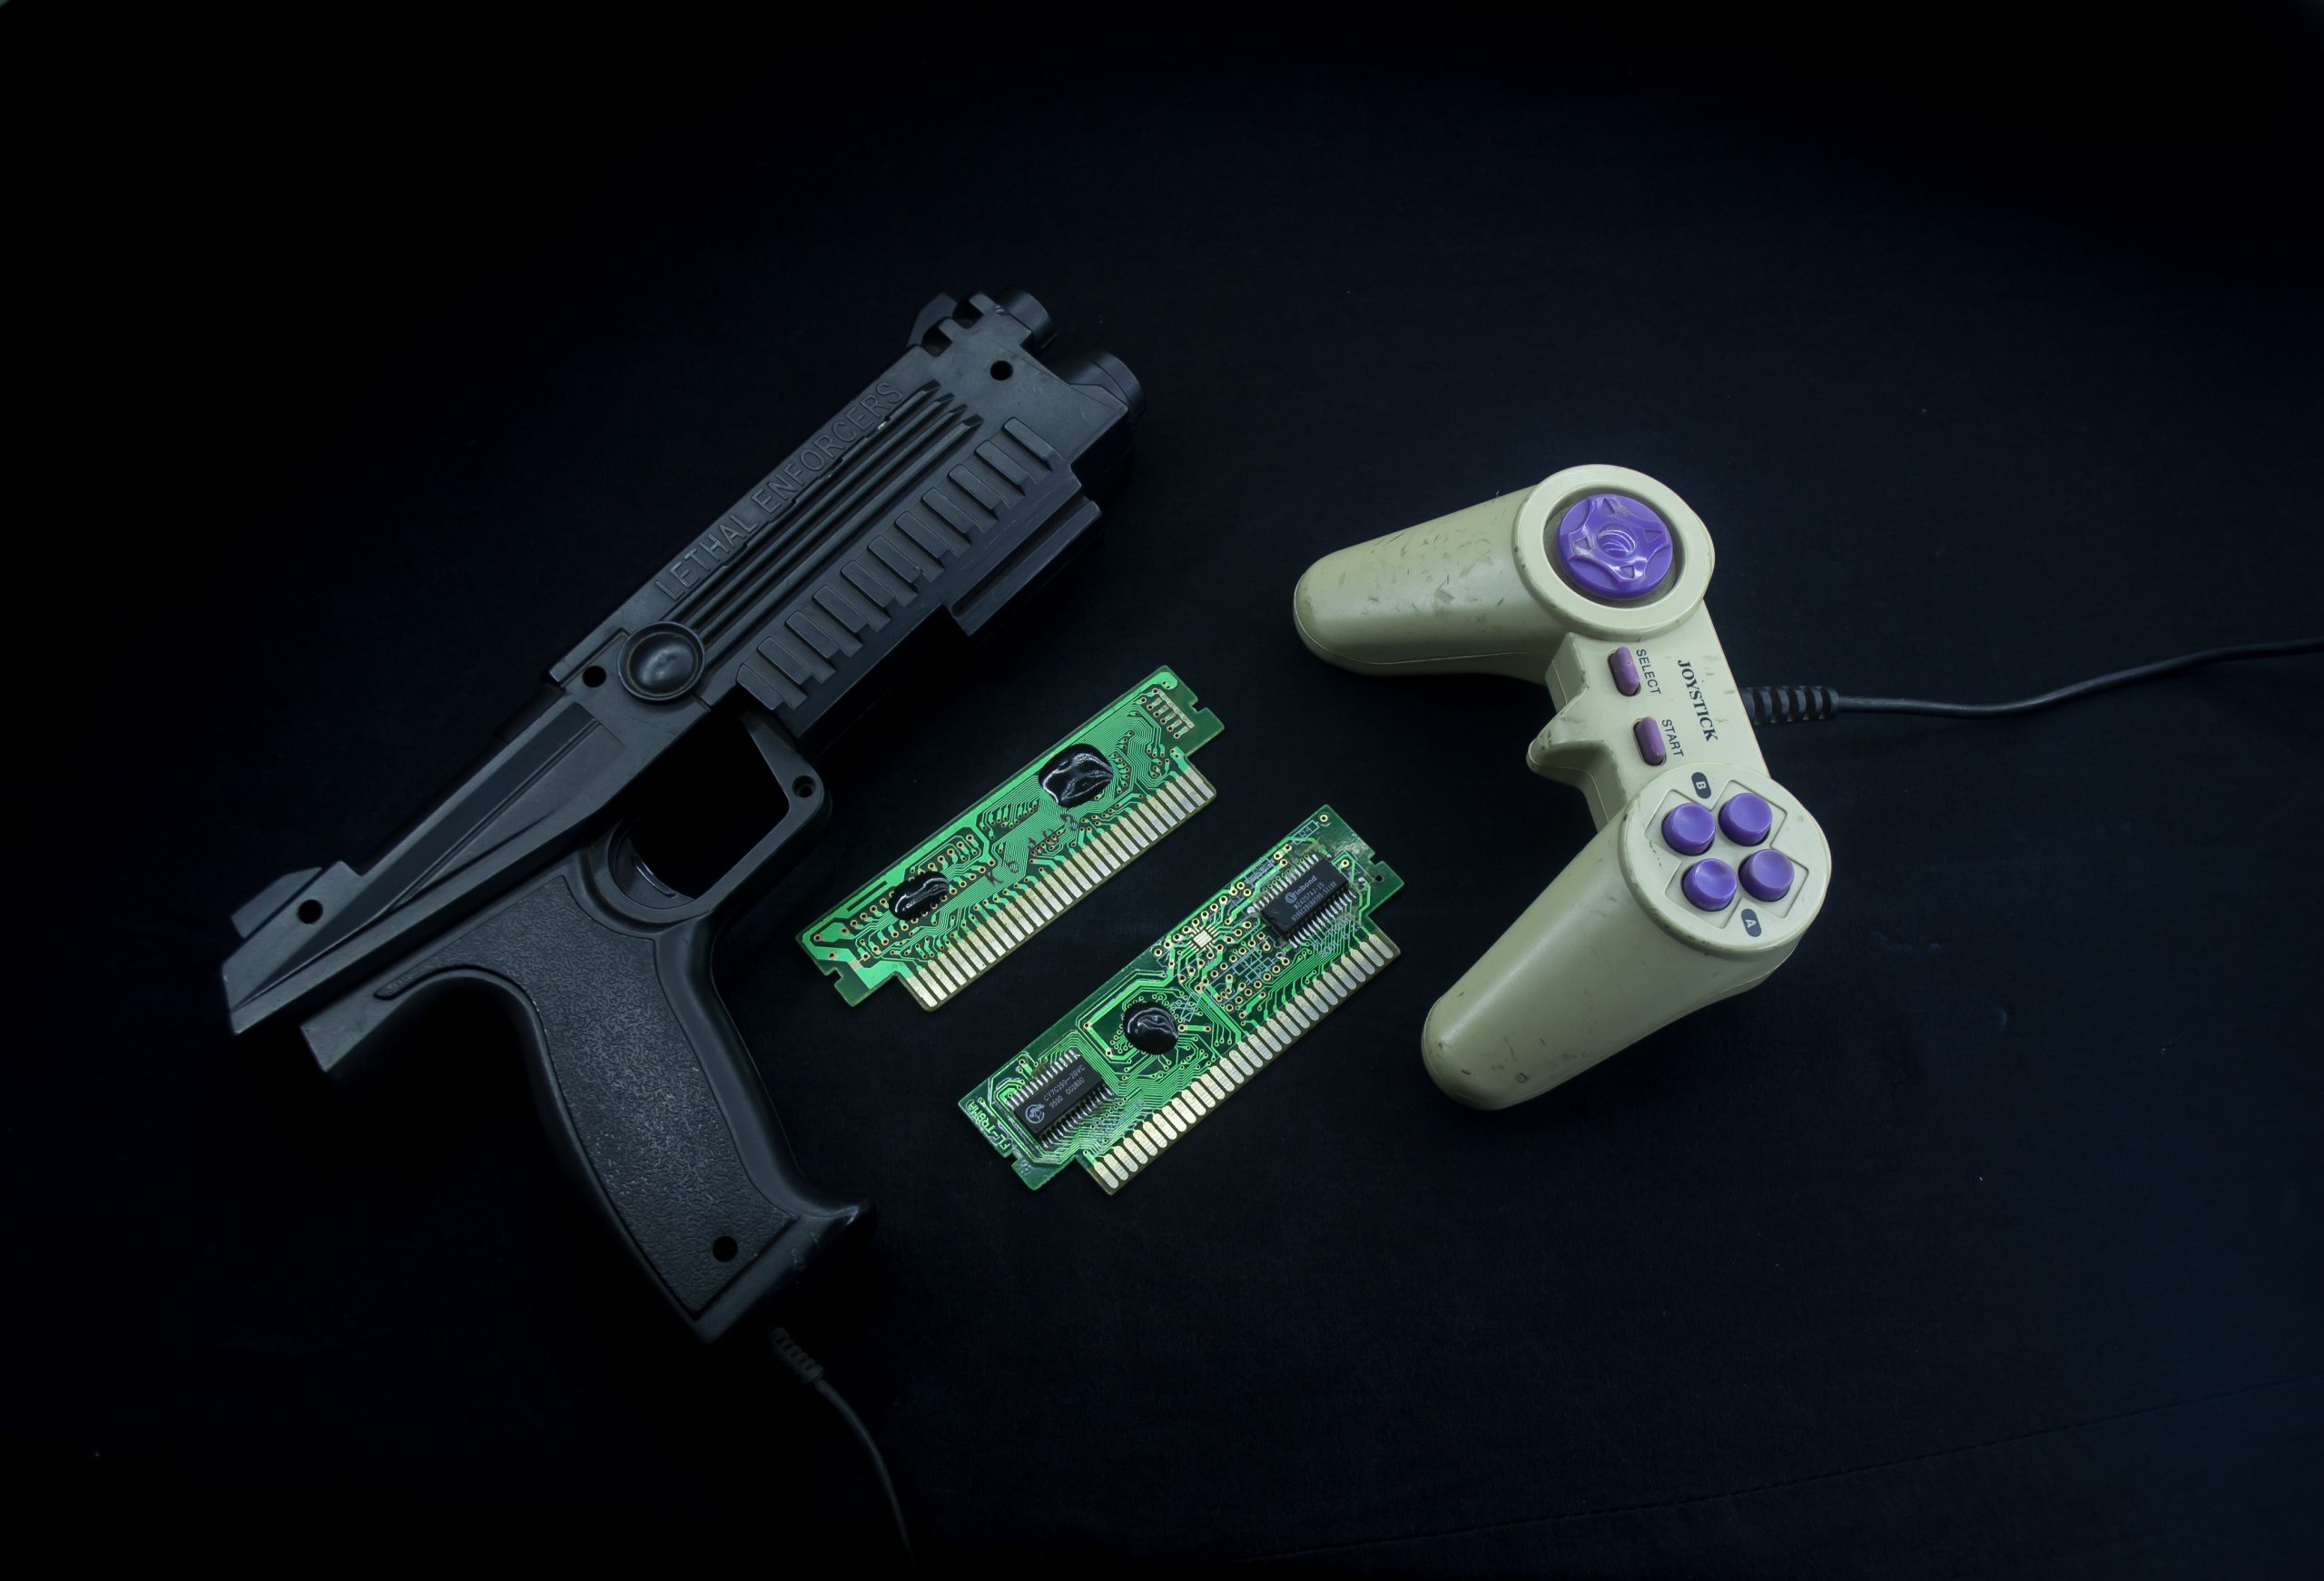 Gaming controller and gun